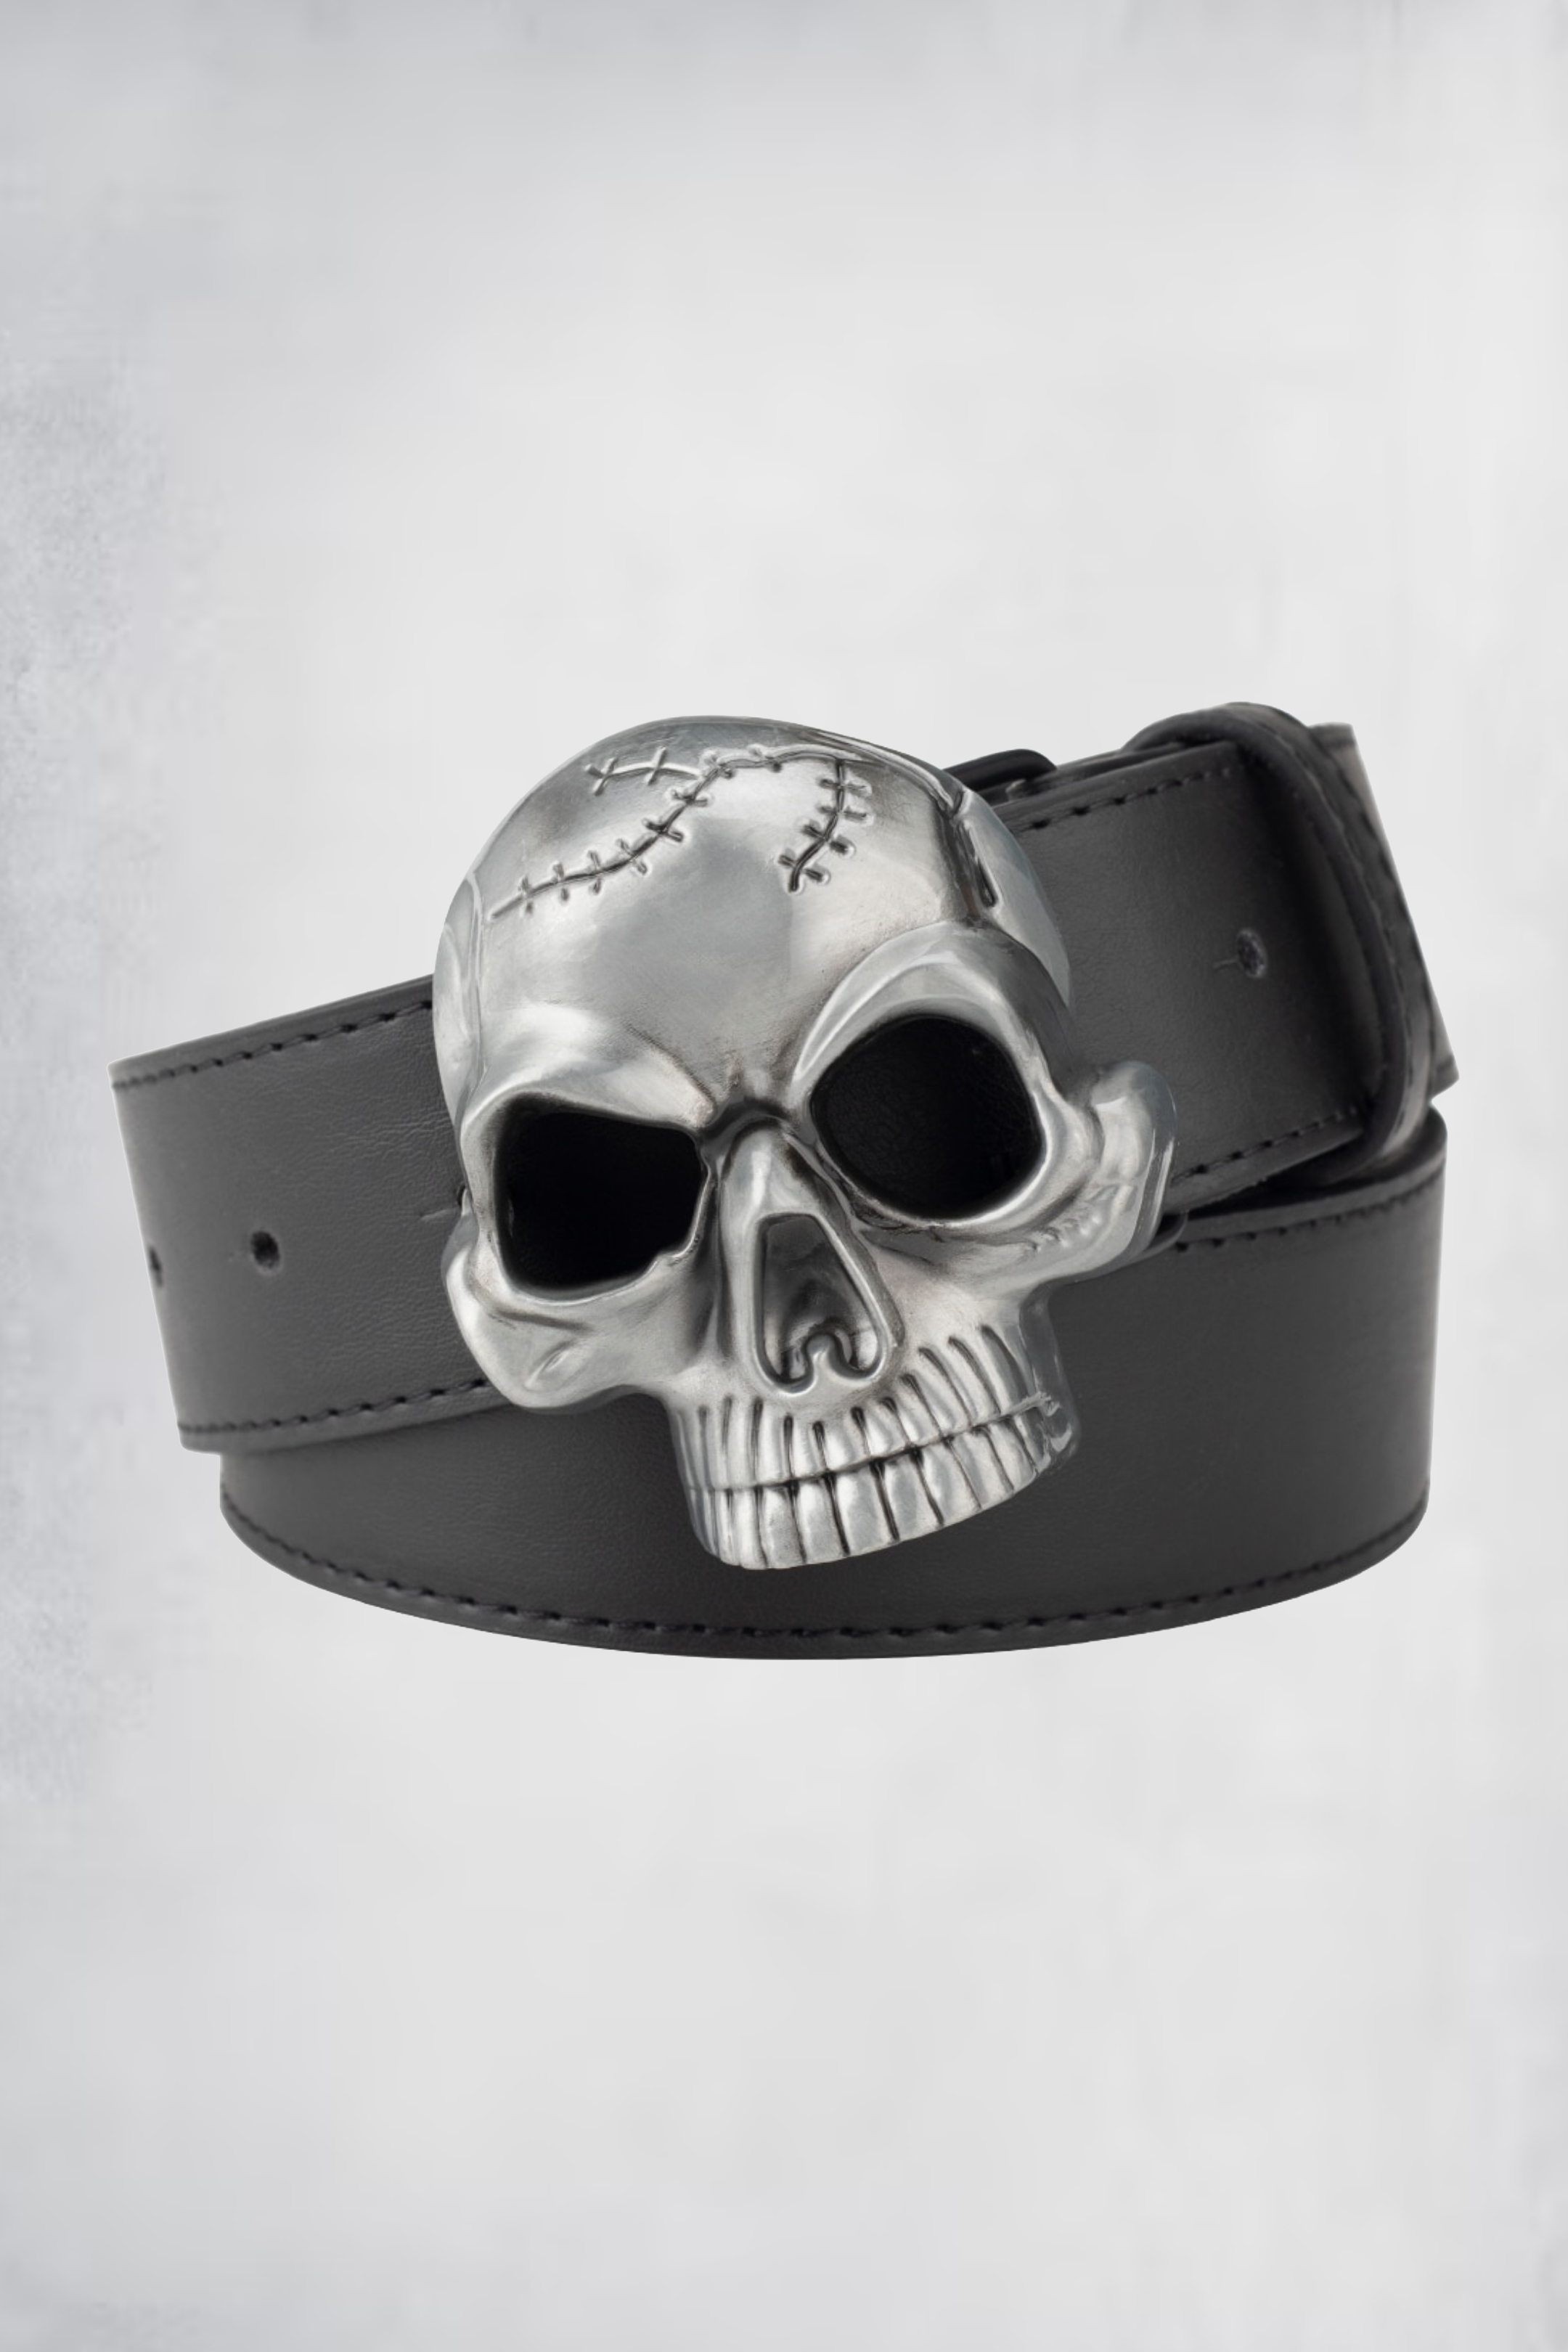 Skull belt